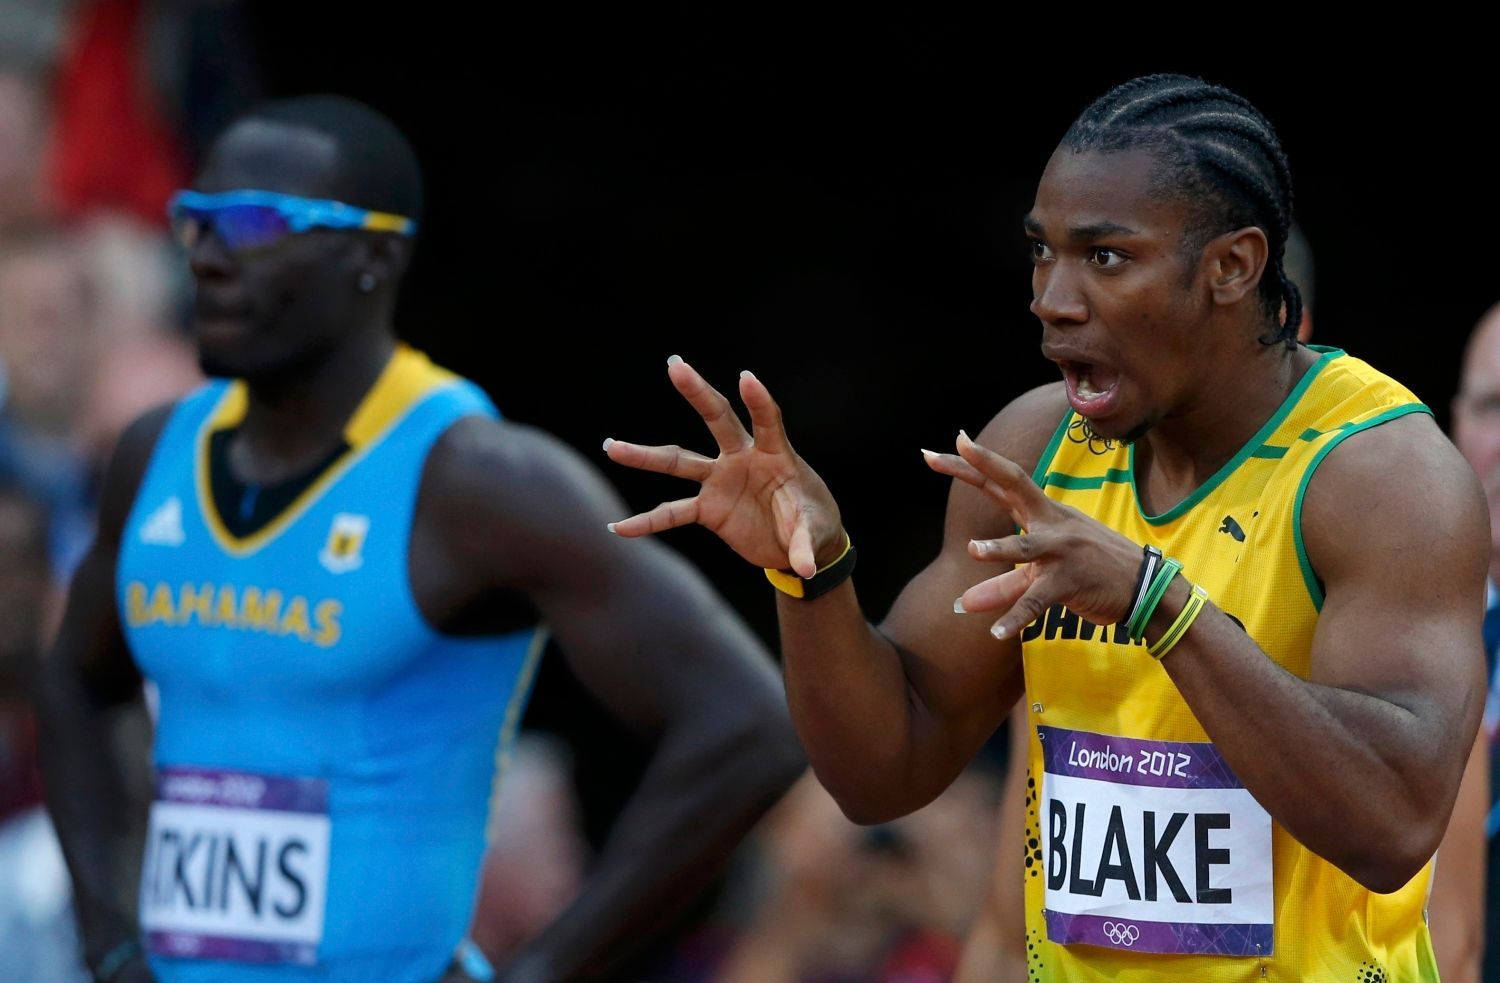 Jamajský sprinter Yohan Blake gestikuluje před semifinále na 100 metrů během OH 2012 v Londýně.